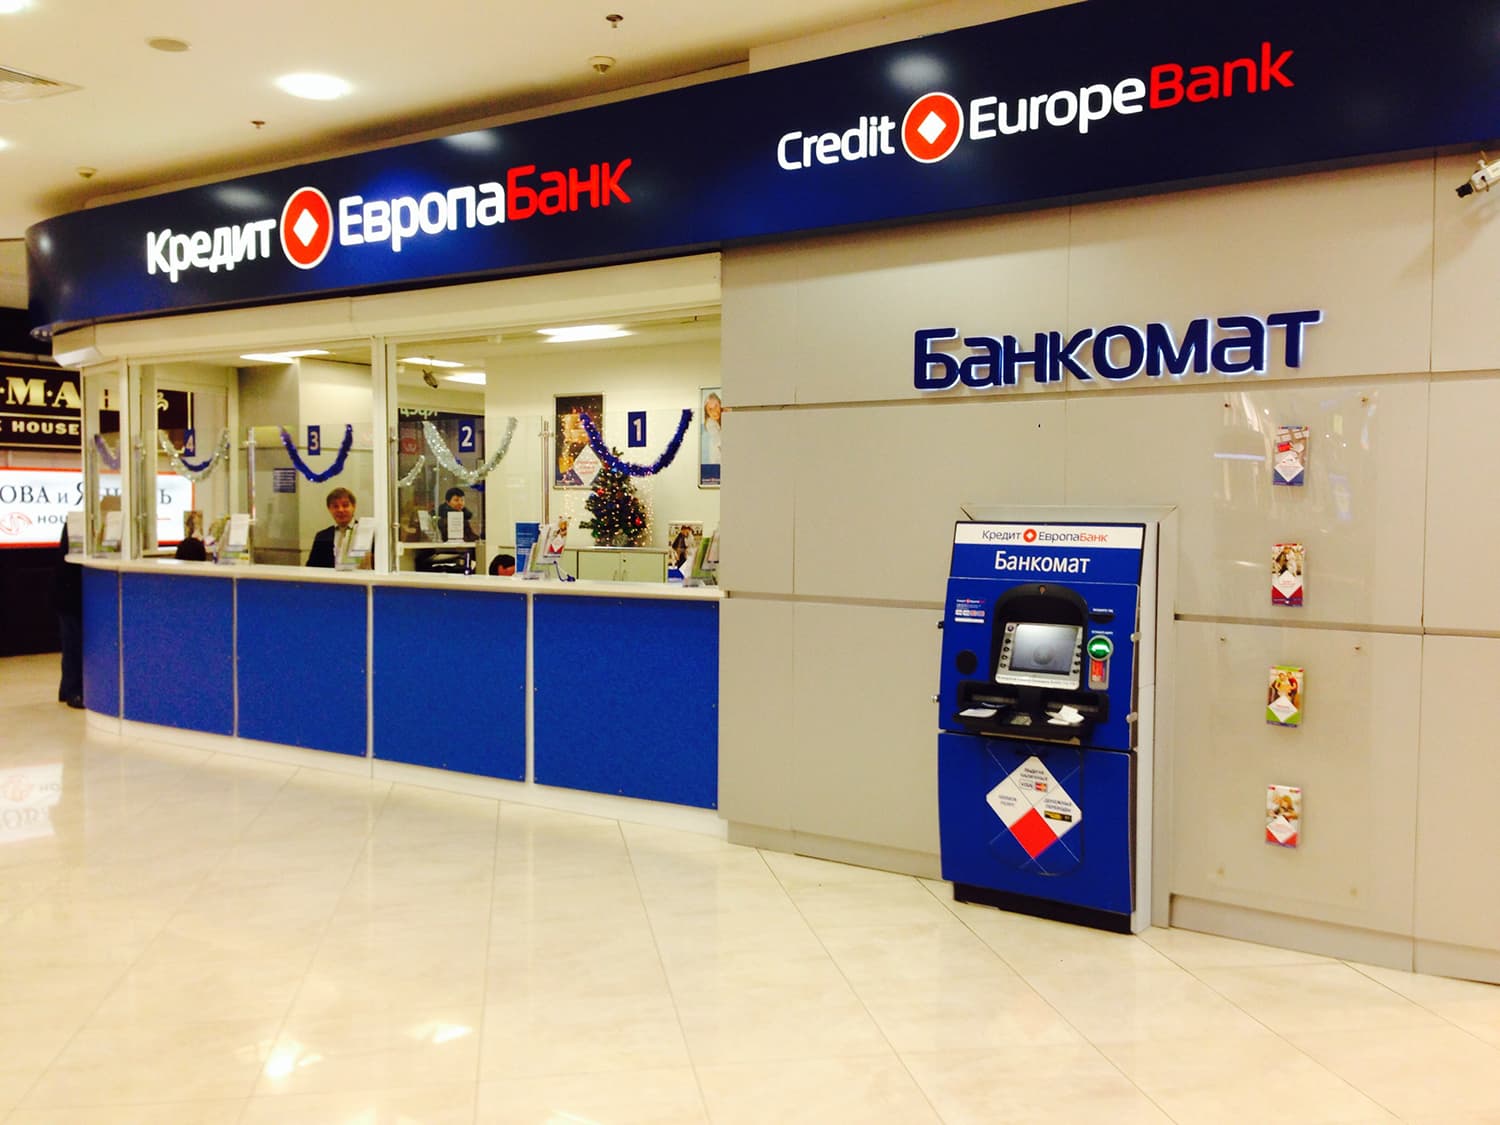 Кредит европа банк фото. Европа банк. Кредит Европа банк. АО кредит Европа банк Россия. Логотип кредит Европа банка.